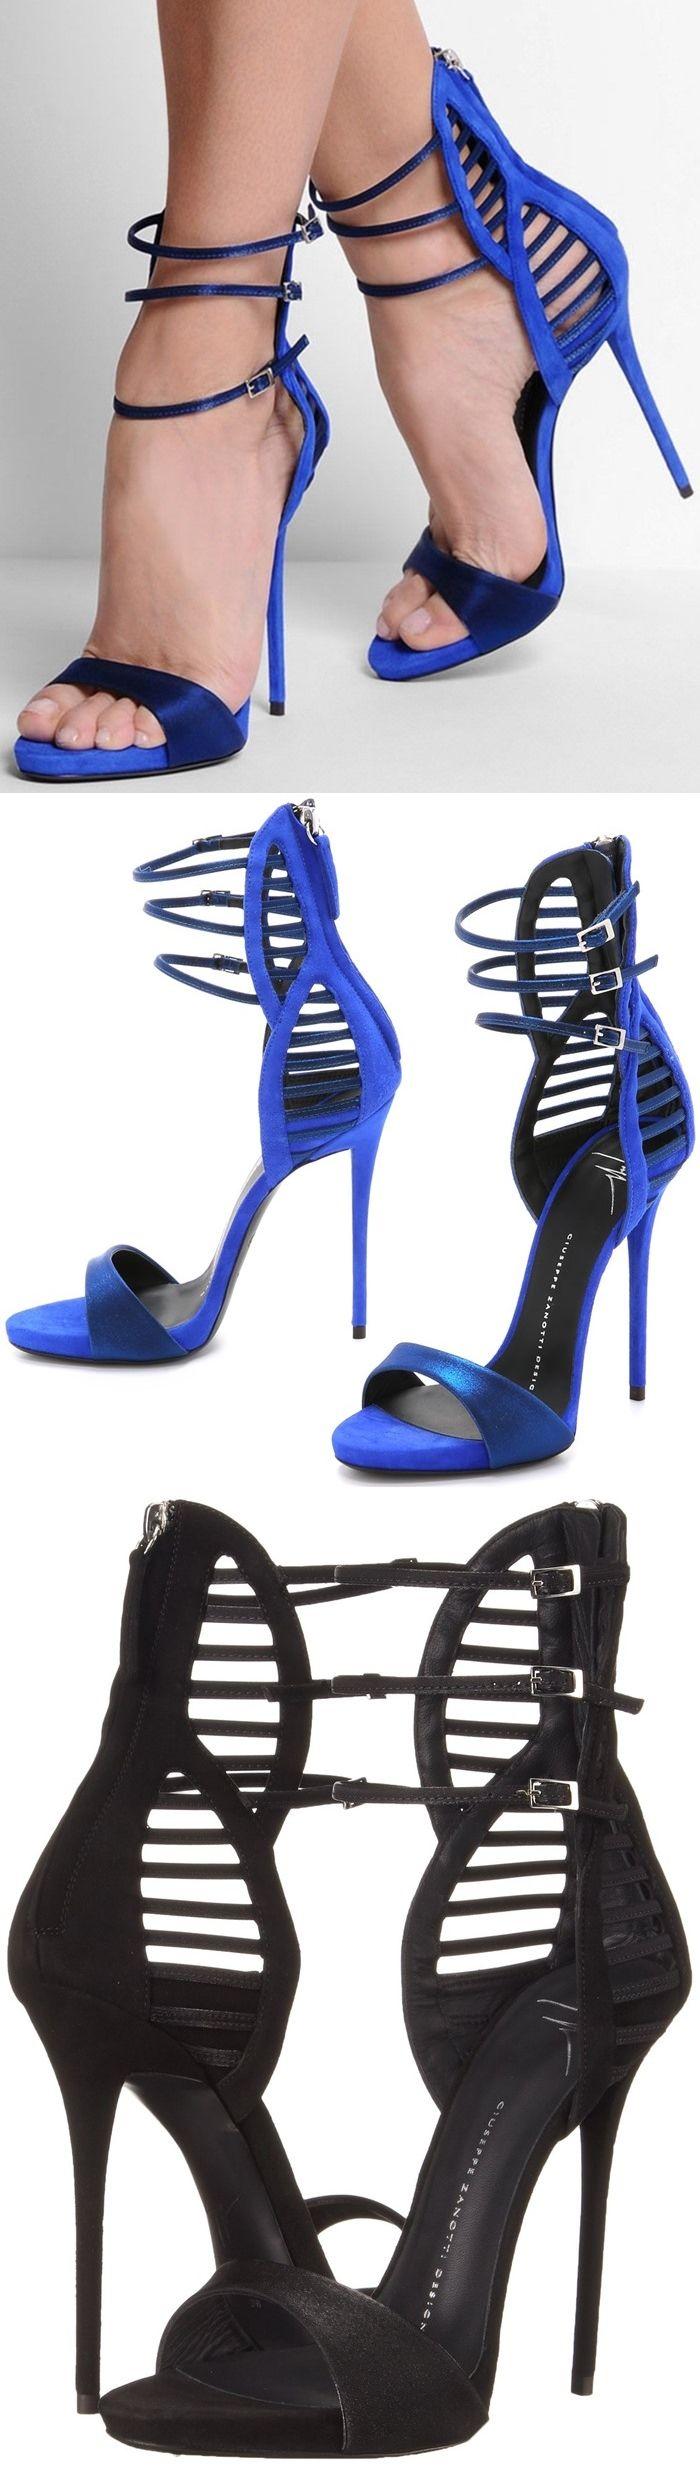 Wedding - 2 New Heels From Legendary Shoe Designer Giuseppe Zanotti